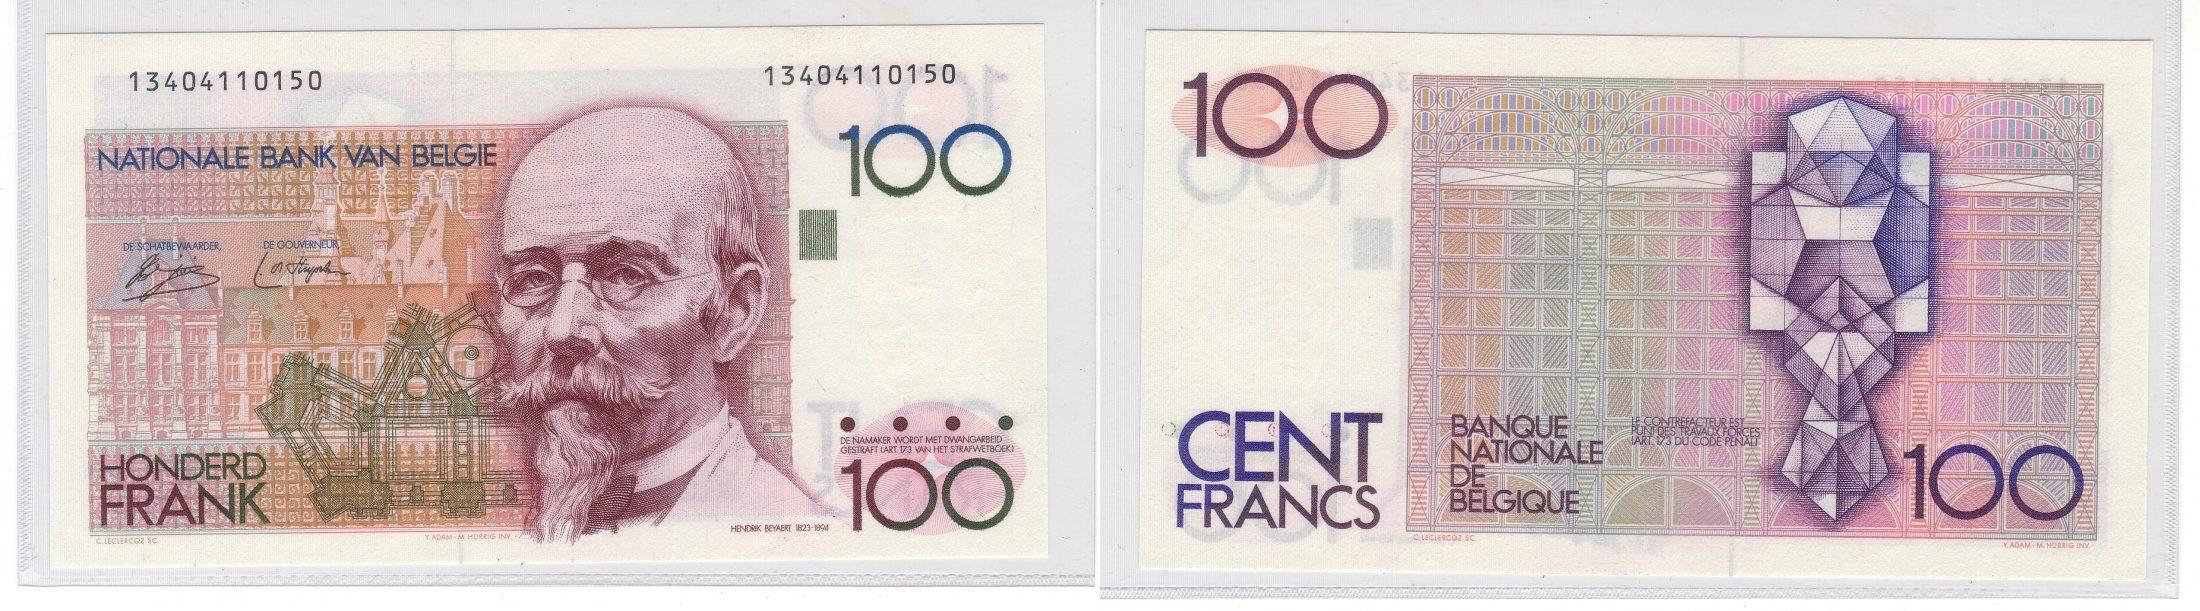 Foto Belgique 100 Francs (1978-1981) foto 256525